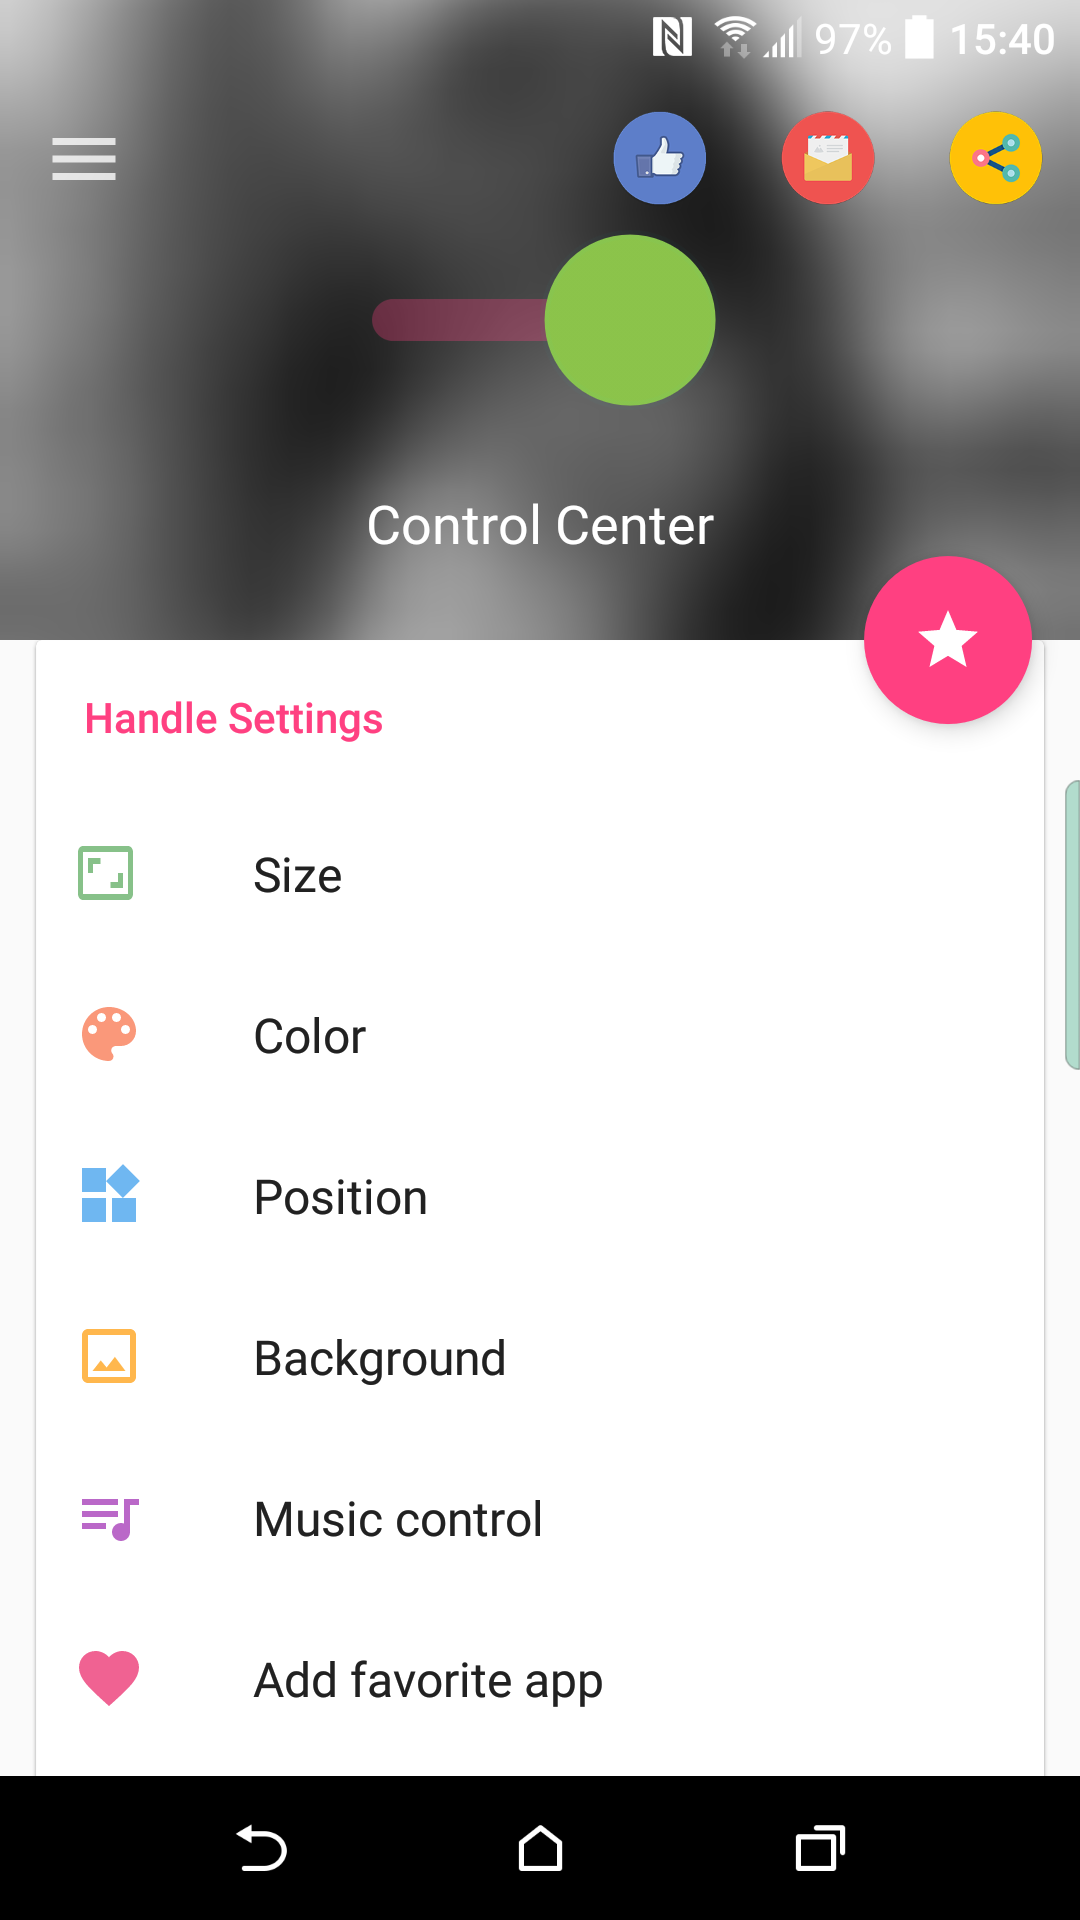 Hướng dẫn cách mang Control Center của iOS 11 lên Android